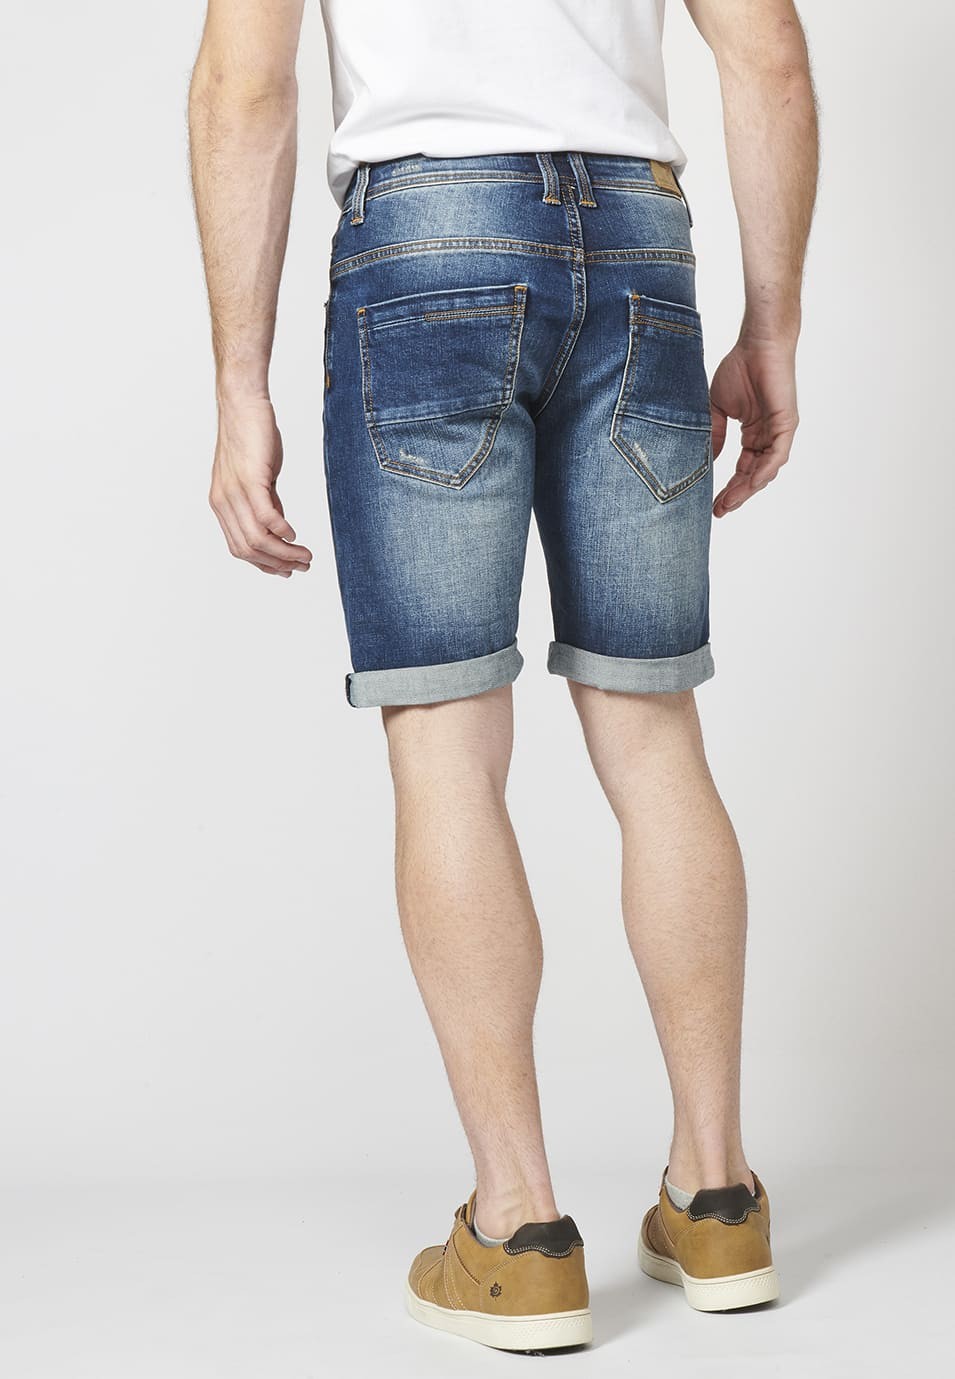 Pantalon corto denim regular fit con cinco bolsillos y efecto gastado para Hombre 6